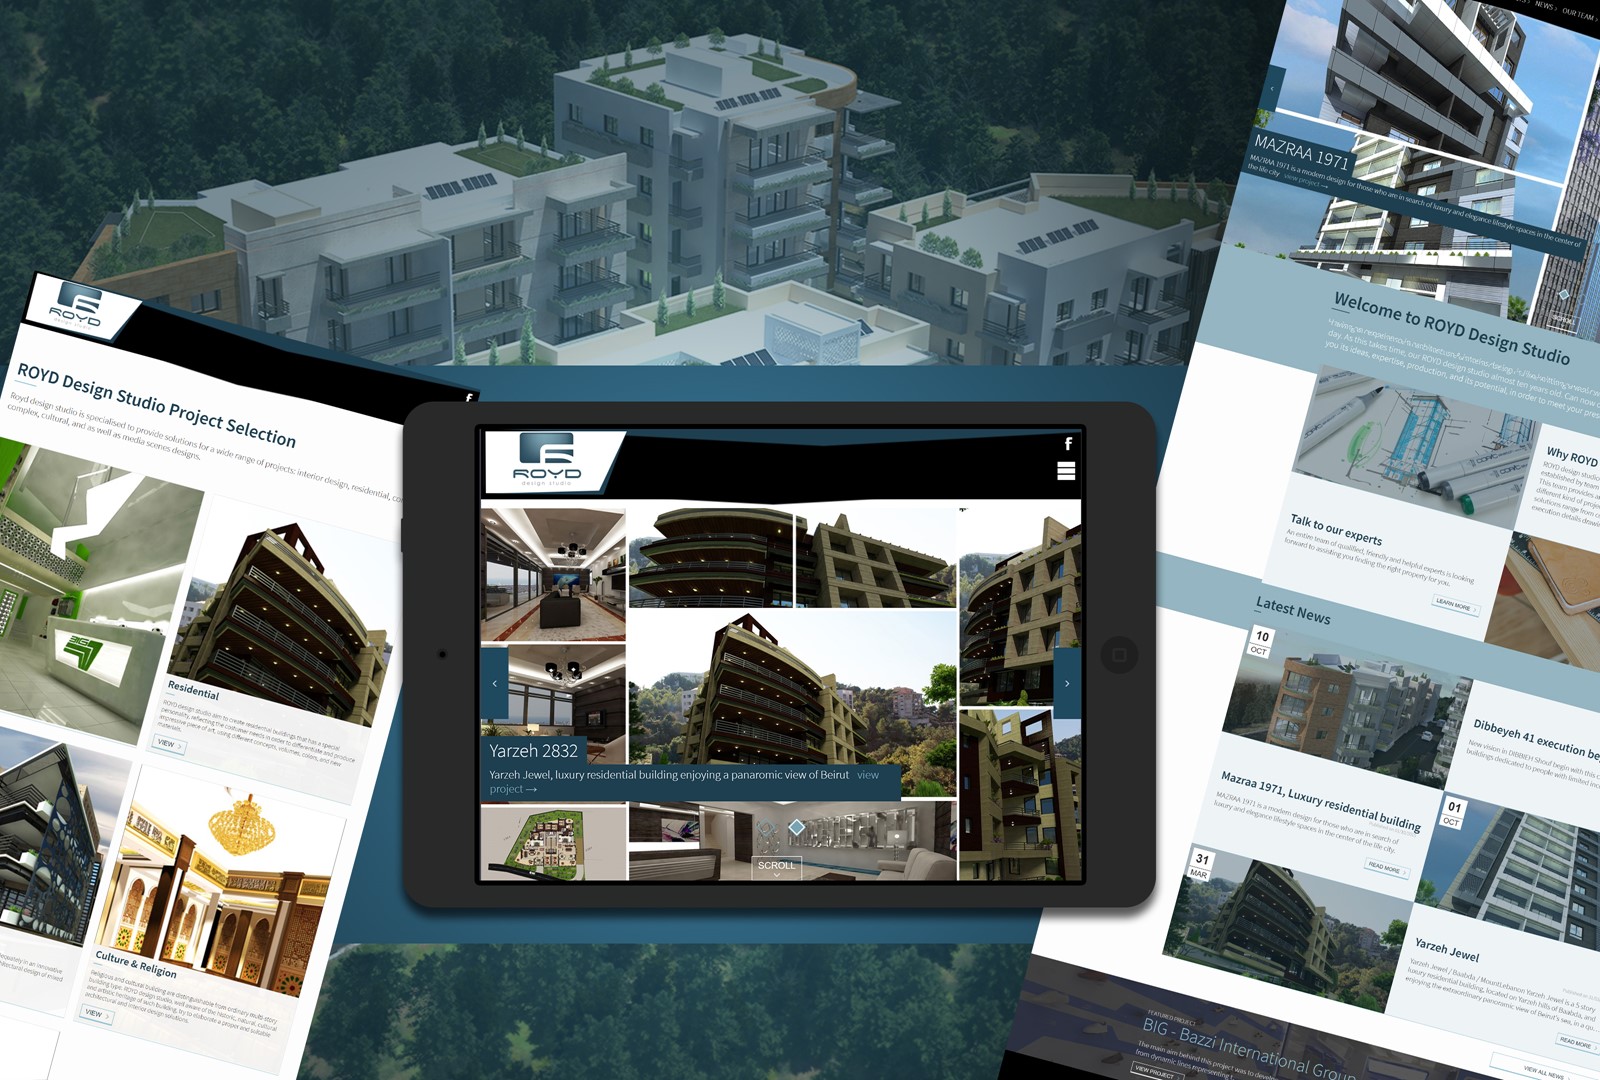 ROYD Architecture Studio, website development by Hussein Khraibani